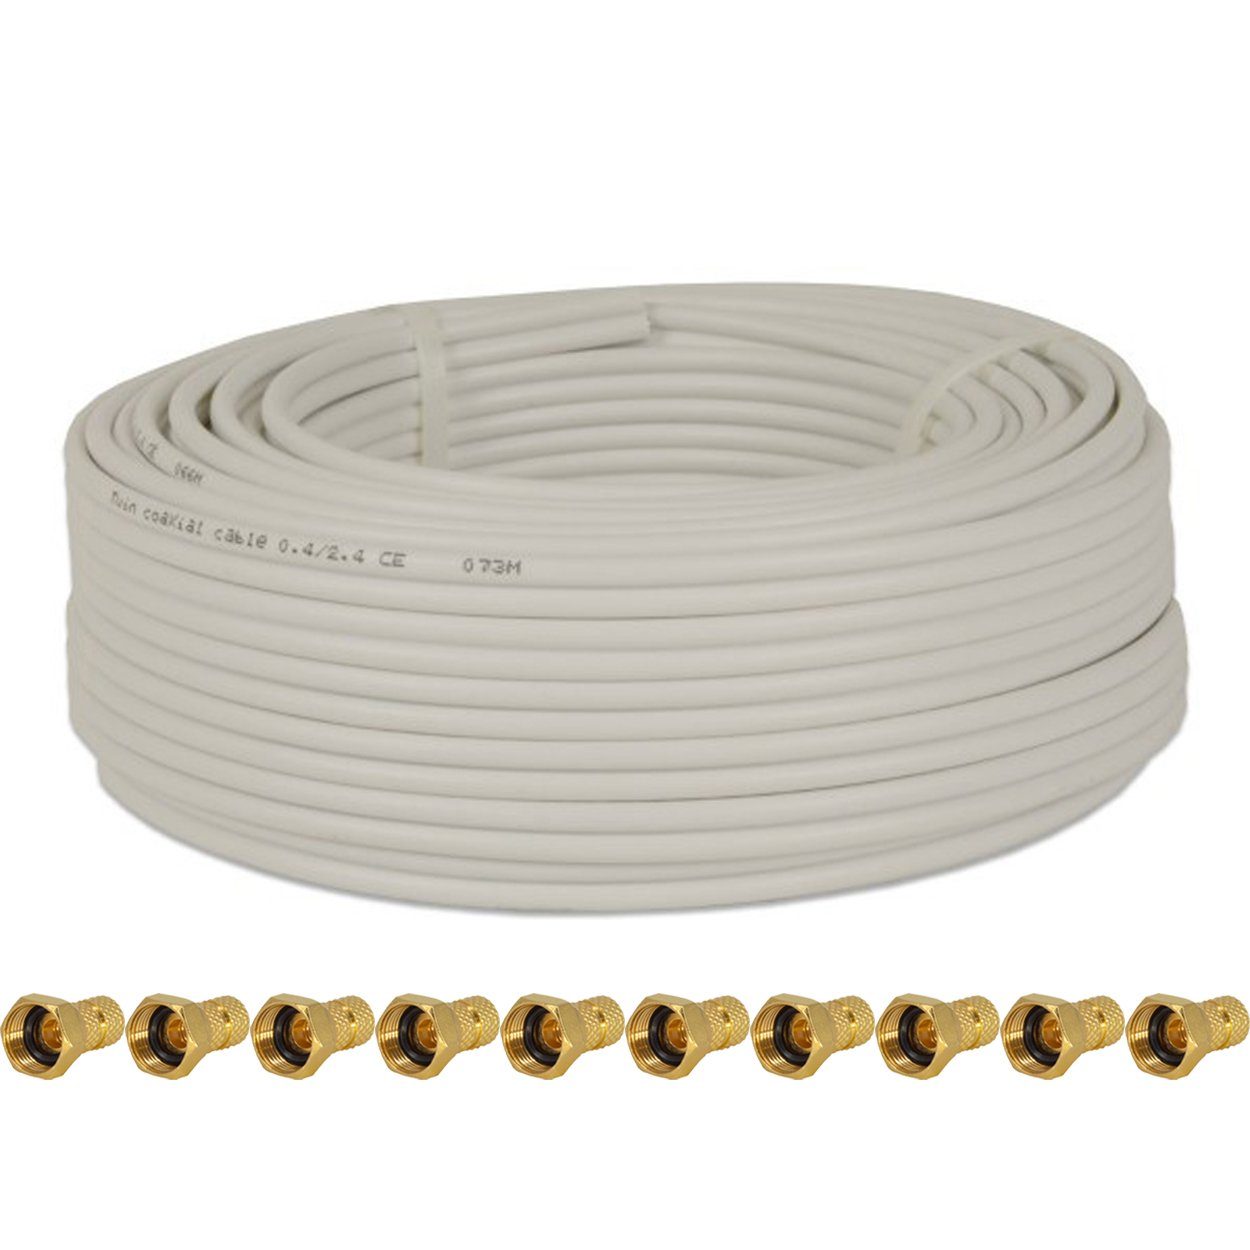 PremiumX 25m Koaxial Kabel 90dB Twin Mini 2x 4 mm weiß 10x F-Stecker SAT-Kabel | SAT-Kabel